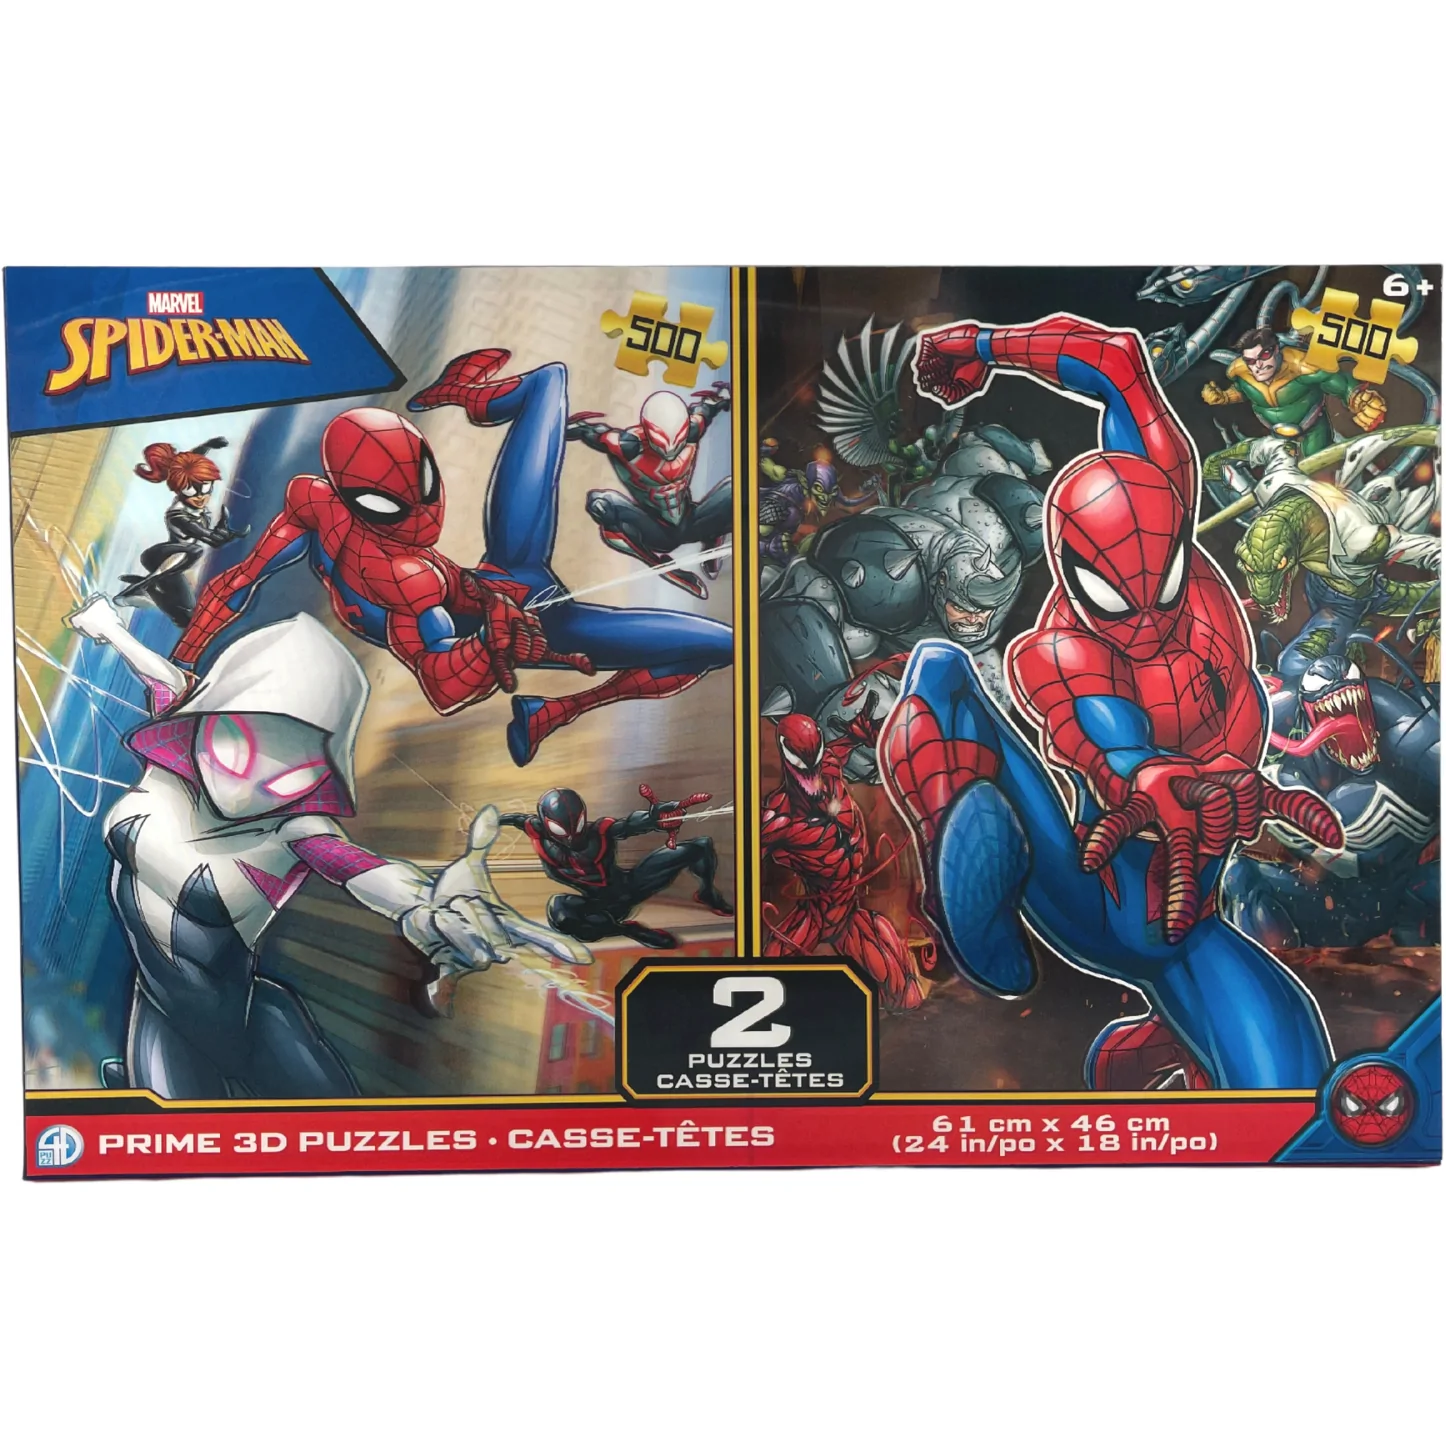 Marvel Spider-Man Puzzle Pack / 3D Puzzles / 500 Piece / 2 Puzzles **DEALS**